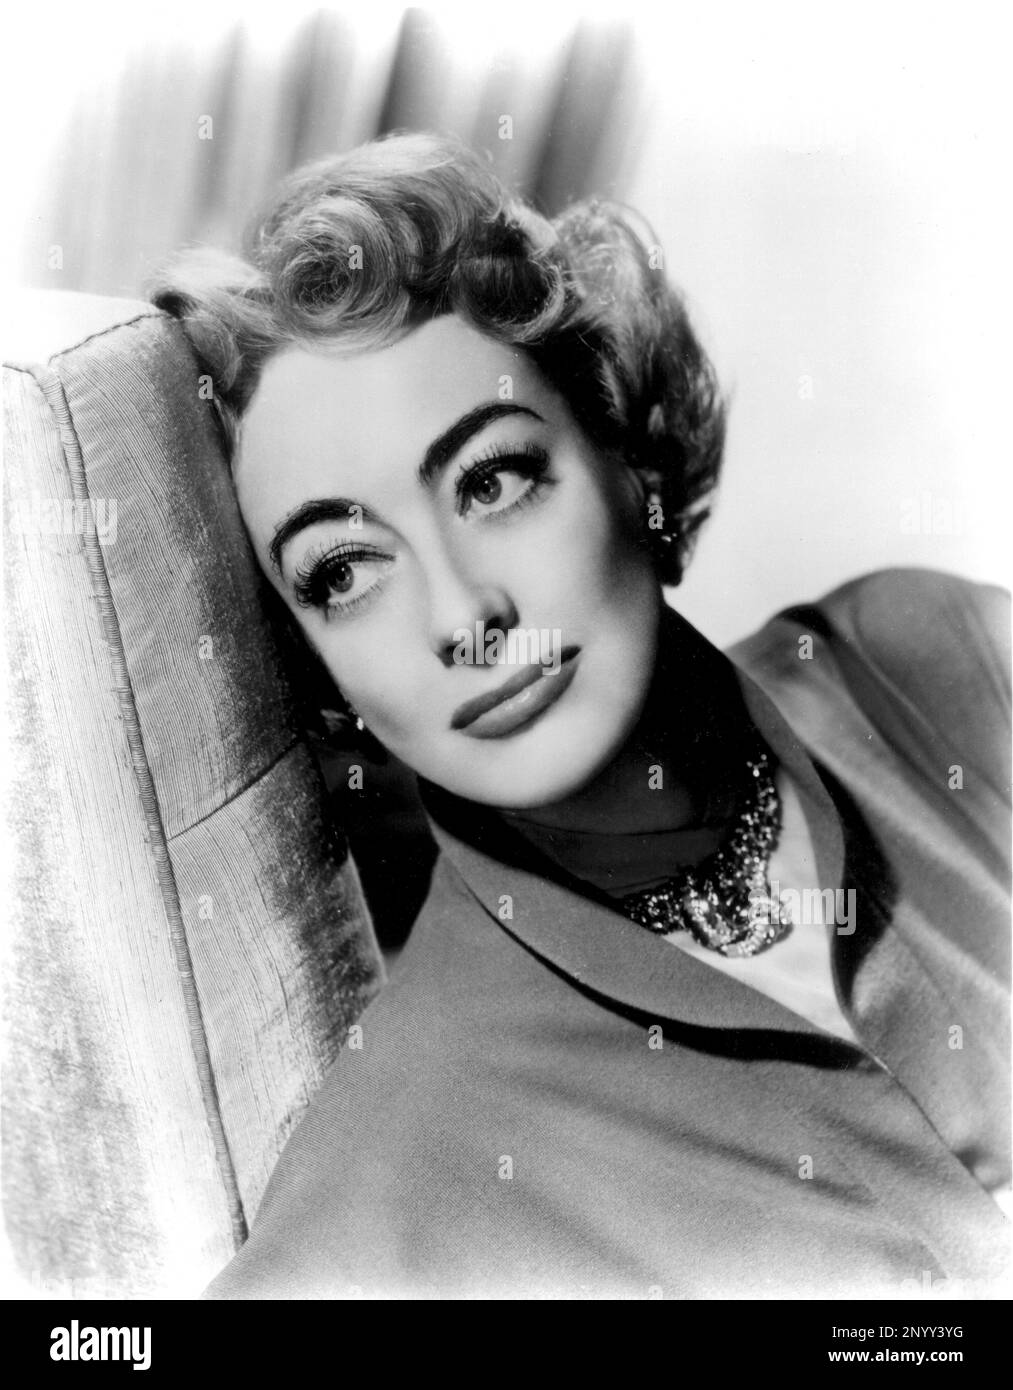 1953 , USA : The movie actress  JOAN  CRAWFORD , pubblicity still for TORCH SONG ( La maschera e il cuore ) by  Charles Walters , from the novel by I.A.R. Wylie  - FILM - CINEMA - portrait - ritratto  - DIVA - DIVINA - VAMP - orecchino - orecchini - earrings - bijoux - gioiello - gioielli - jewels - collana - collier - necklace  ----  Archivio GBB Stock Photo